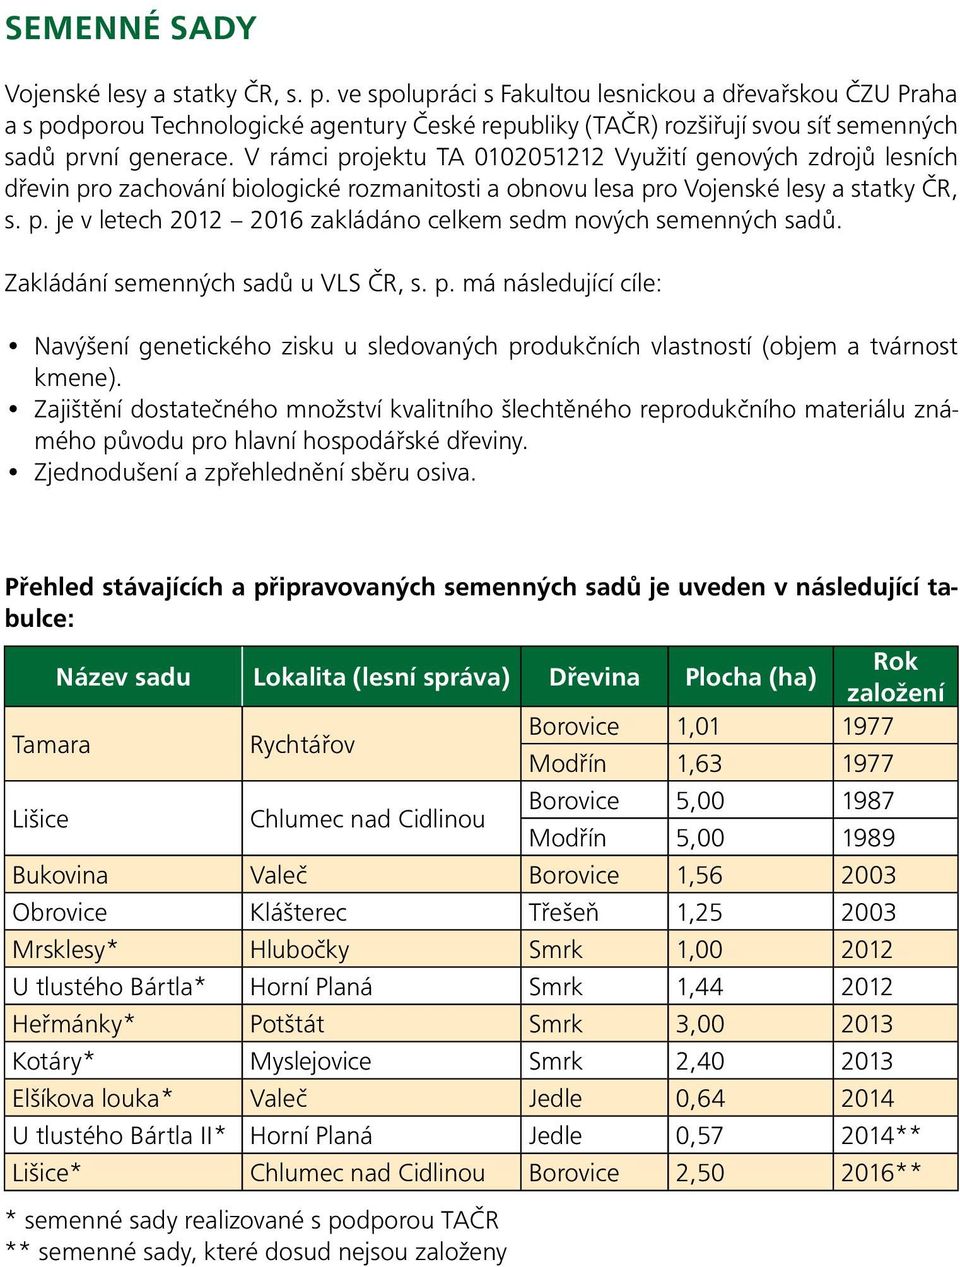 V rámci projektu TA 0102051212 Využití genových zdrojů lesních dřevin pro zachování biologické rozmanitosti a obnovu lesa pro Vojenské lesy a statky ČR, s. p. je v letech 2012 2016 zakládáno celkem sedm nových semenných sadů.